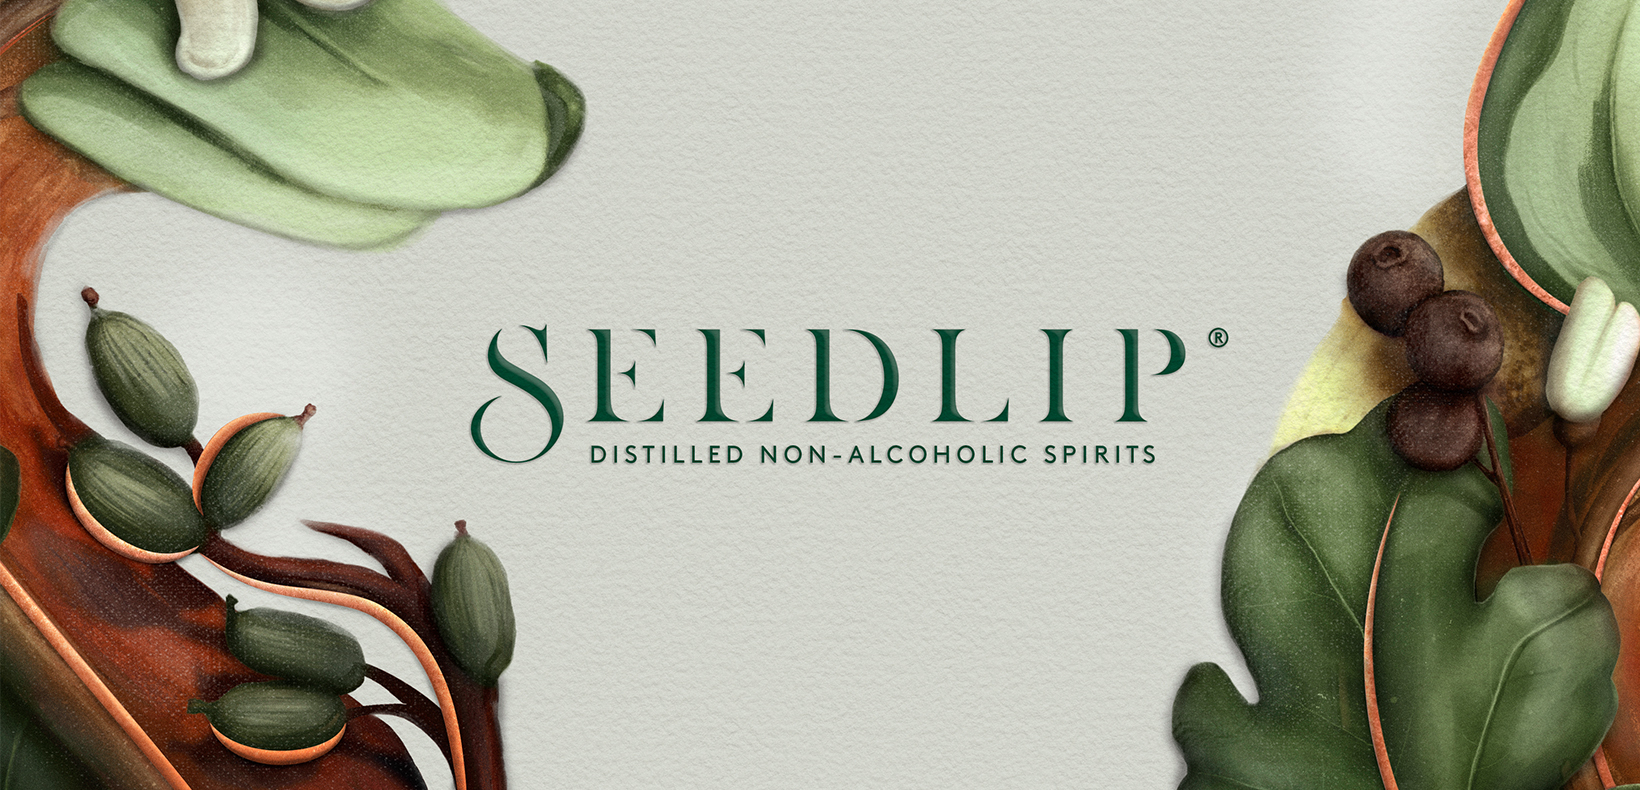 Seedlip Brand